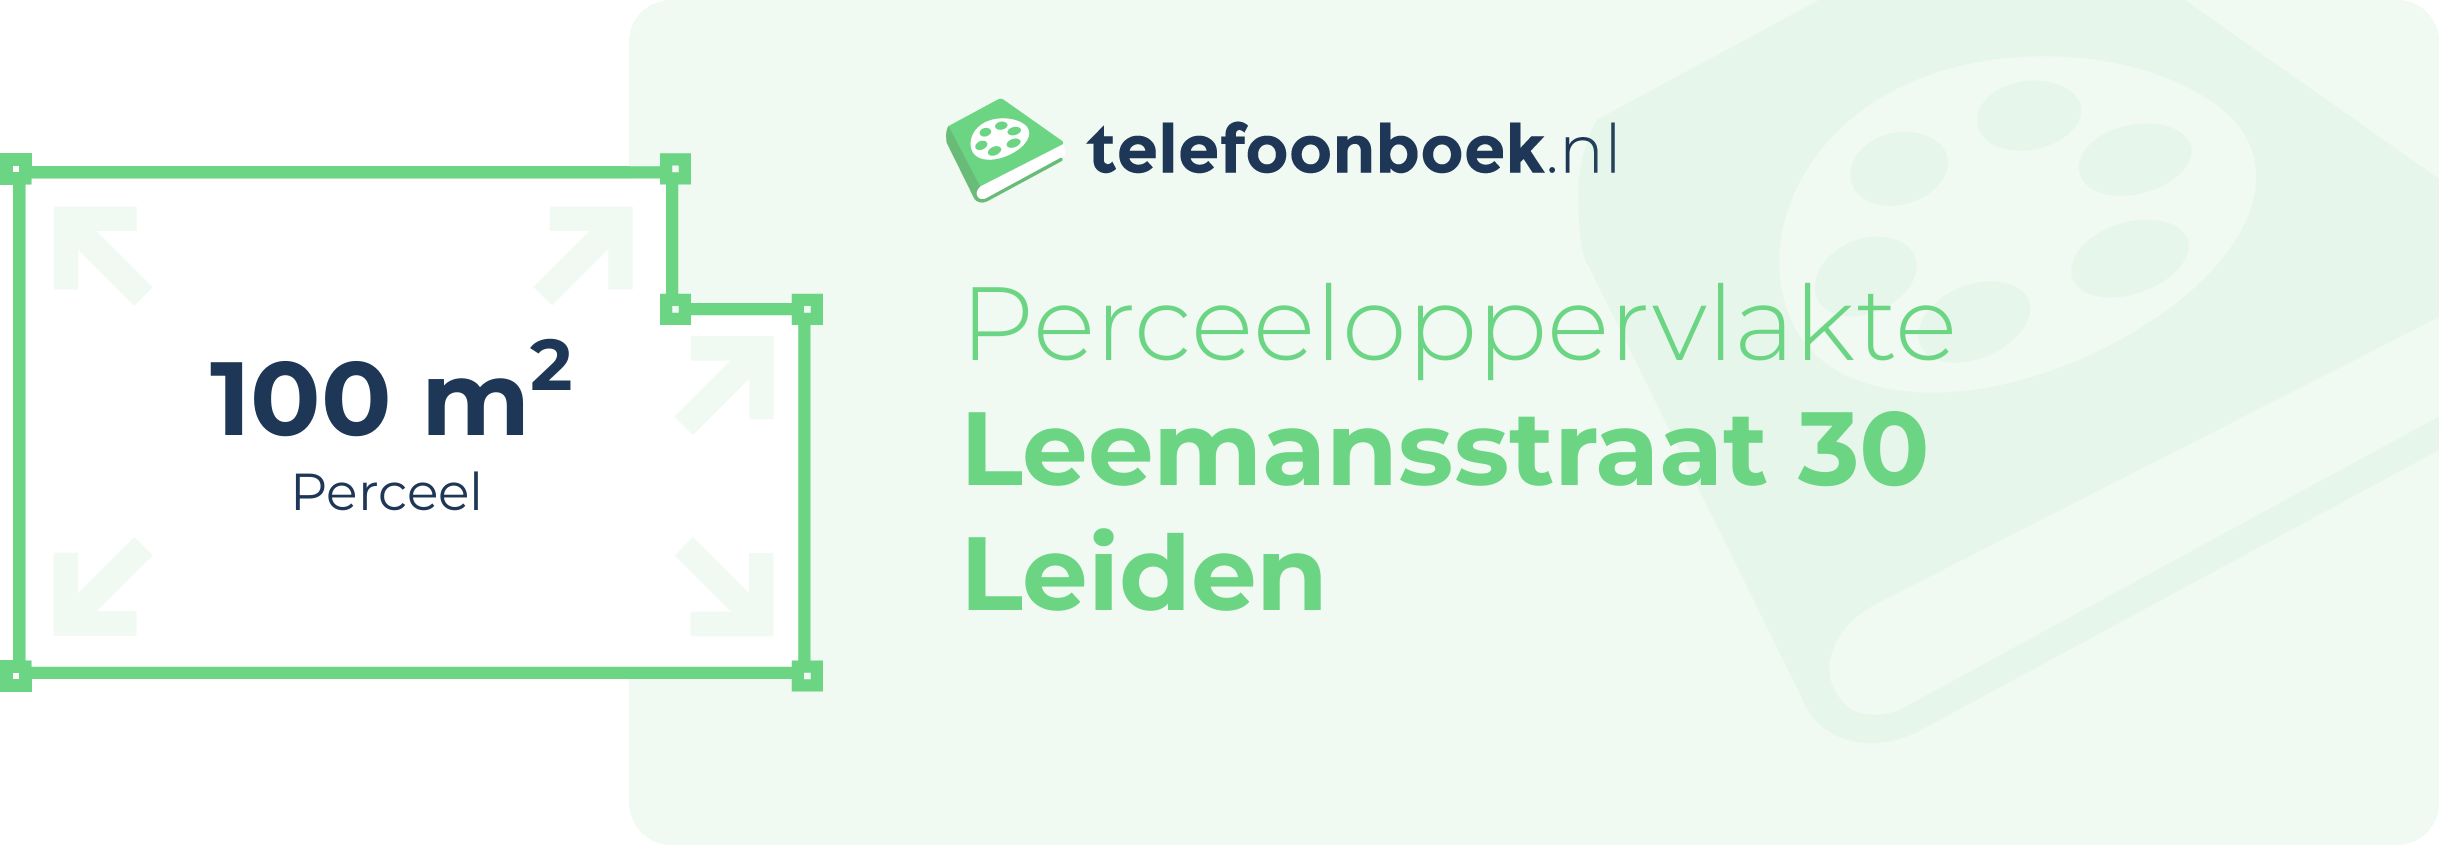 Perceeloppervlakte Leemansstraat 30 Leiden